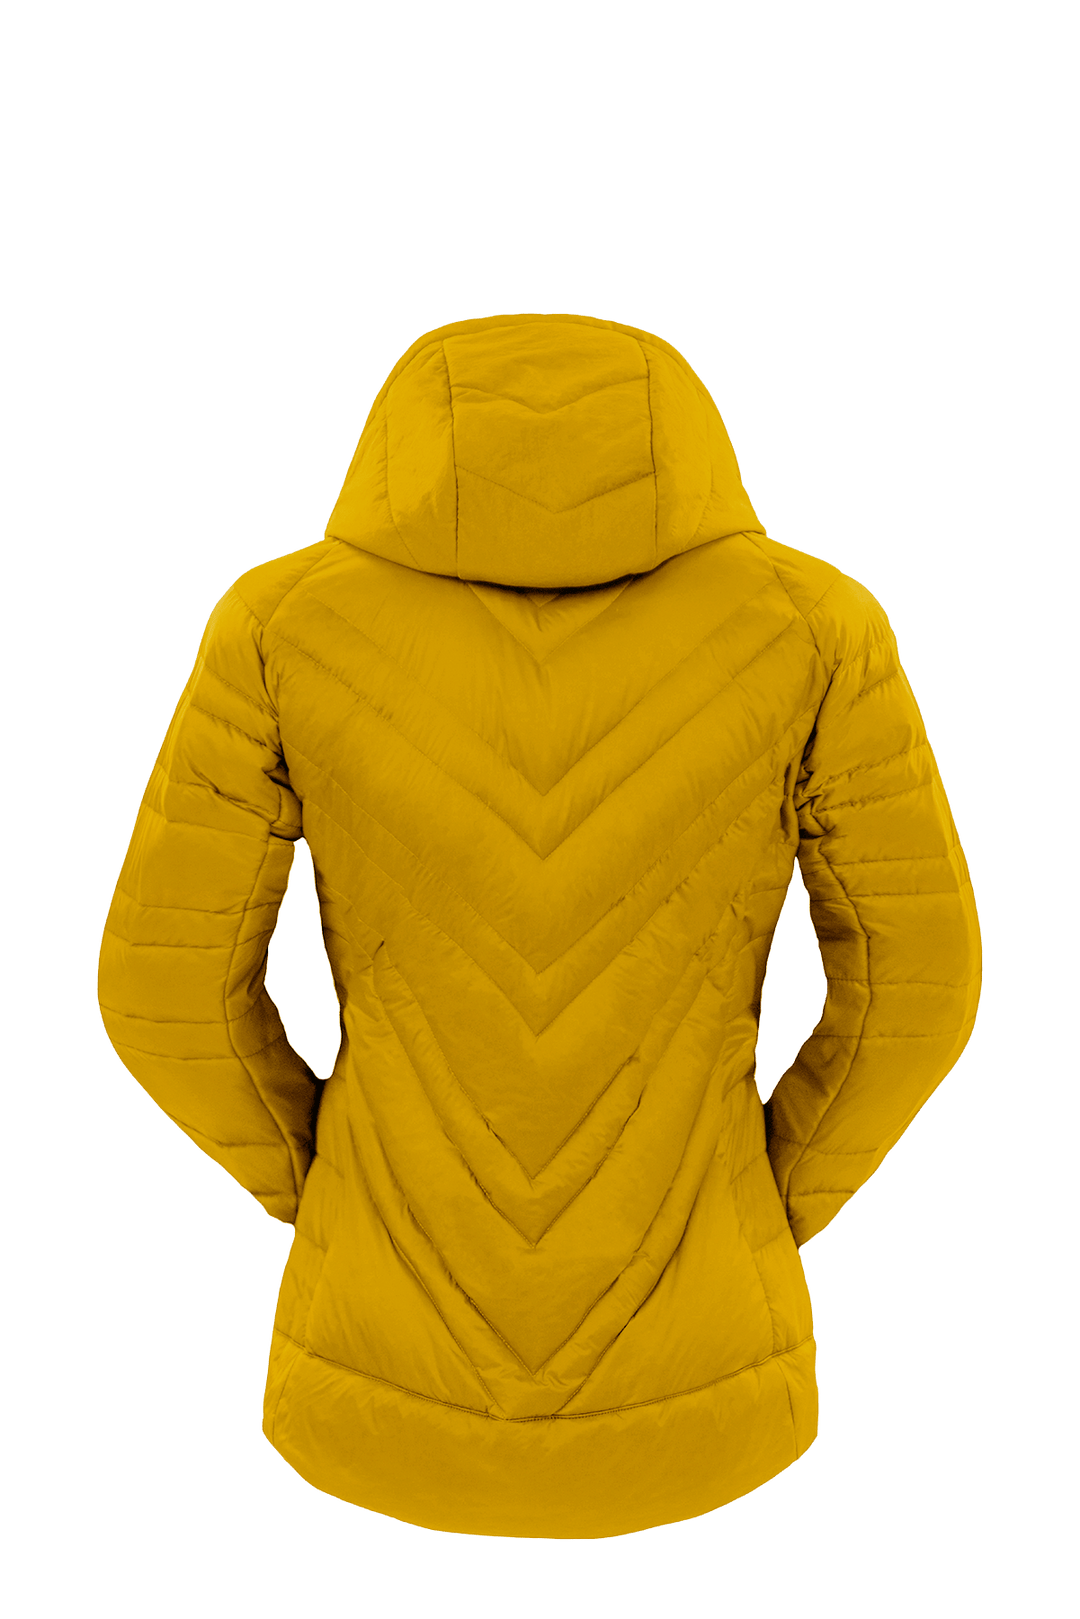 The Lightful DownWool Jacket W| PINEAPPLE